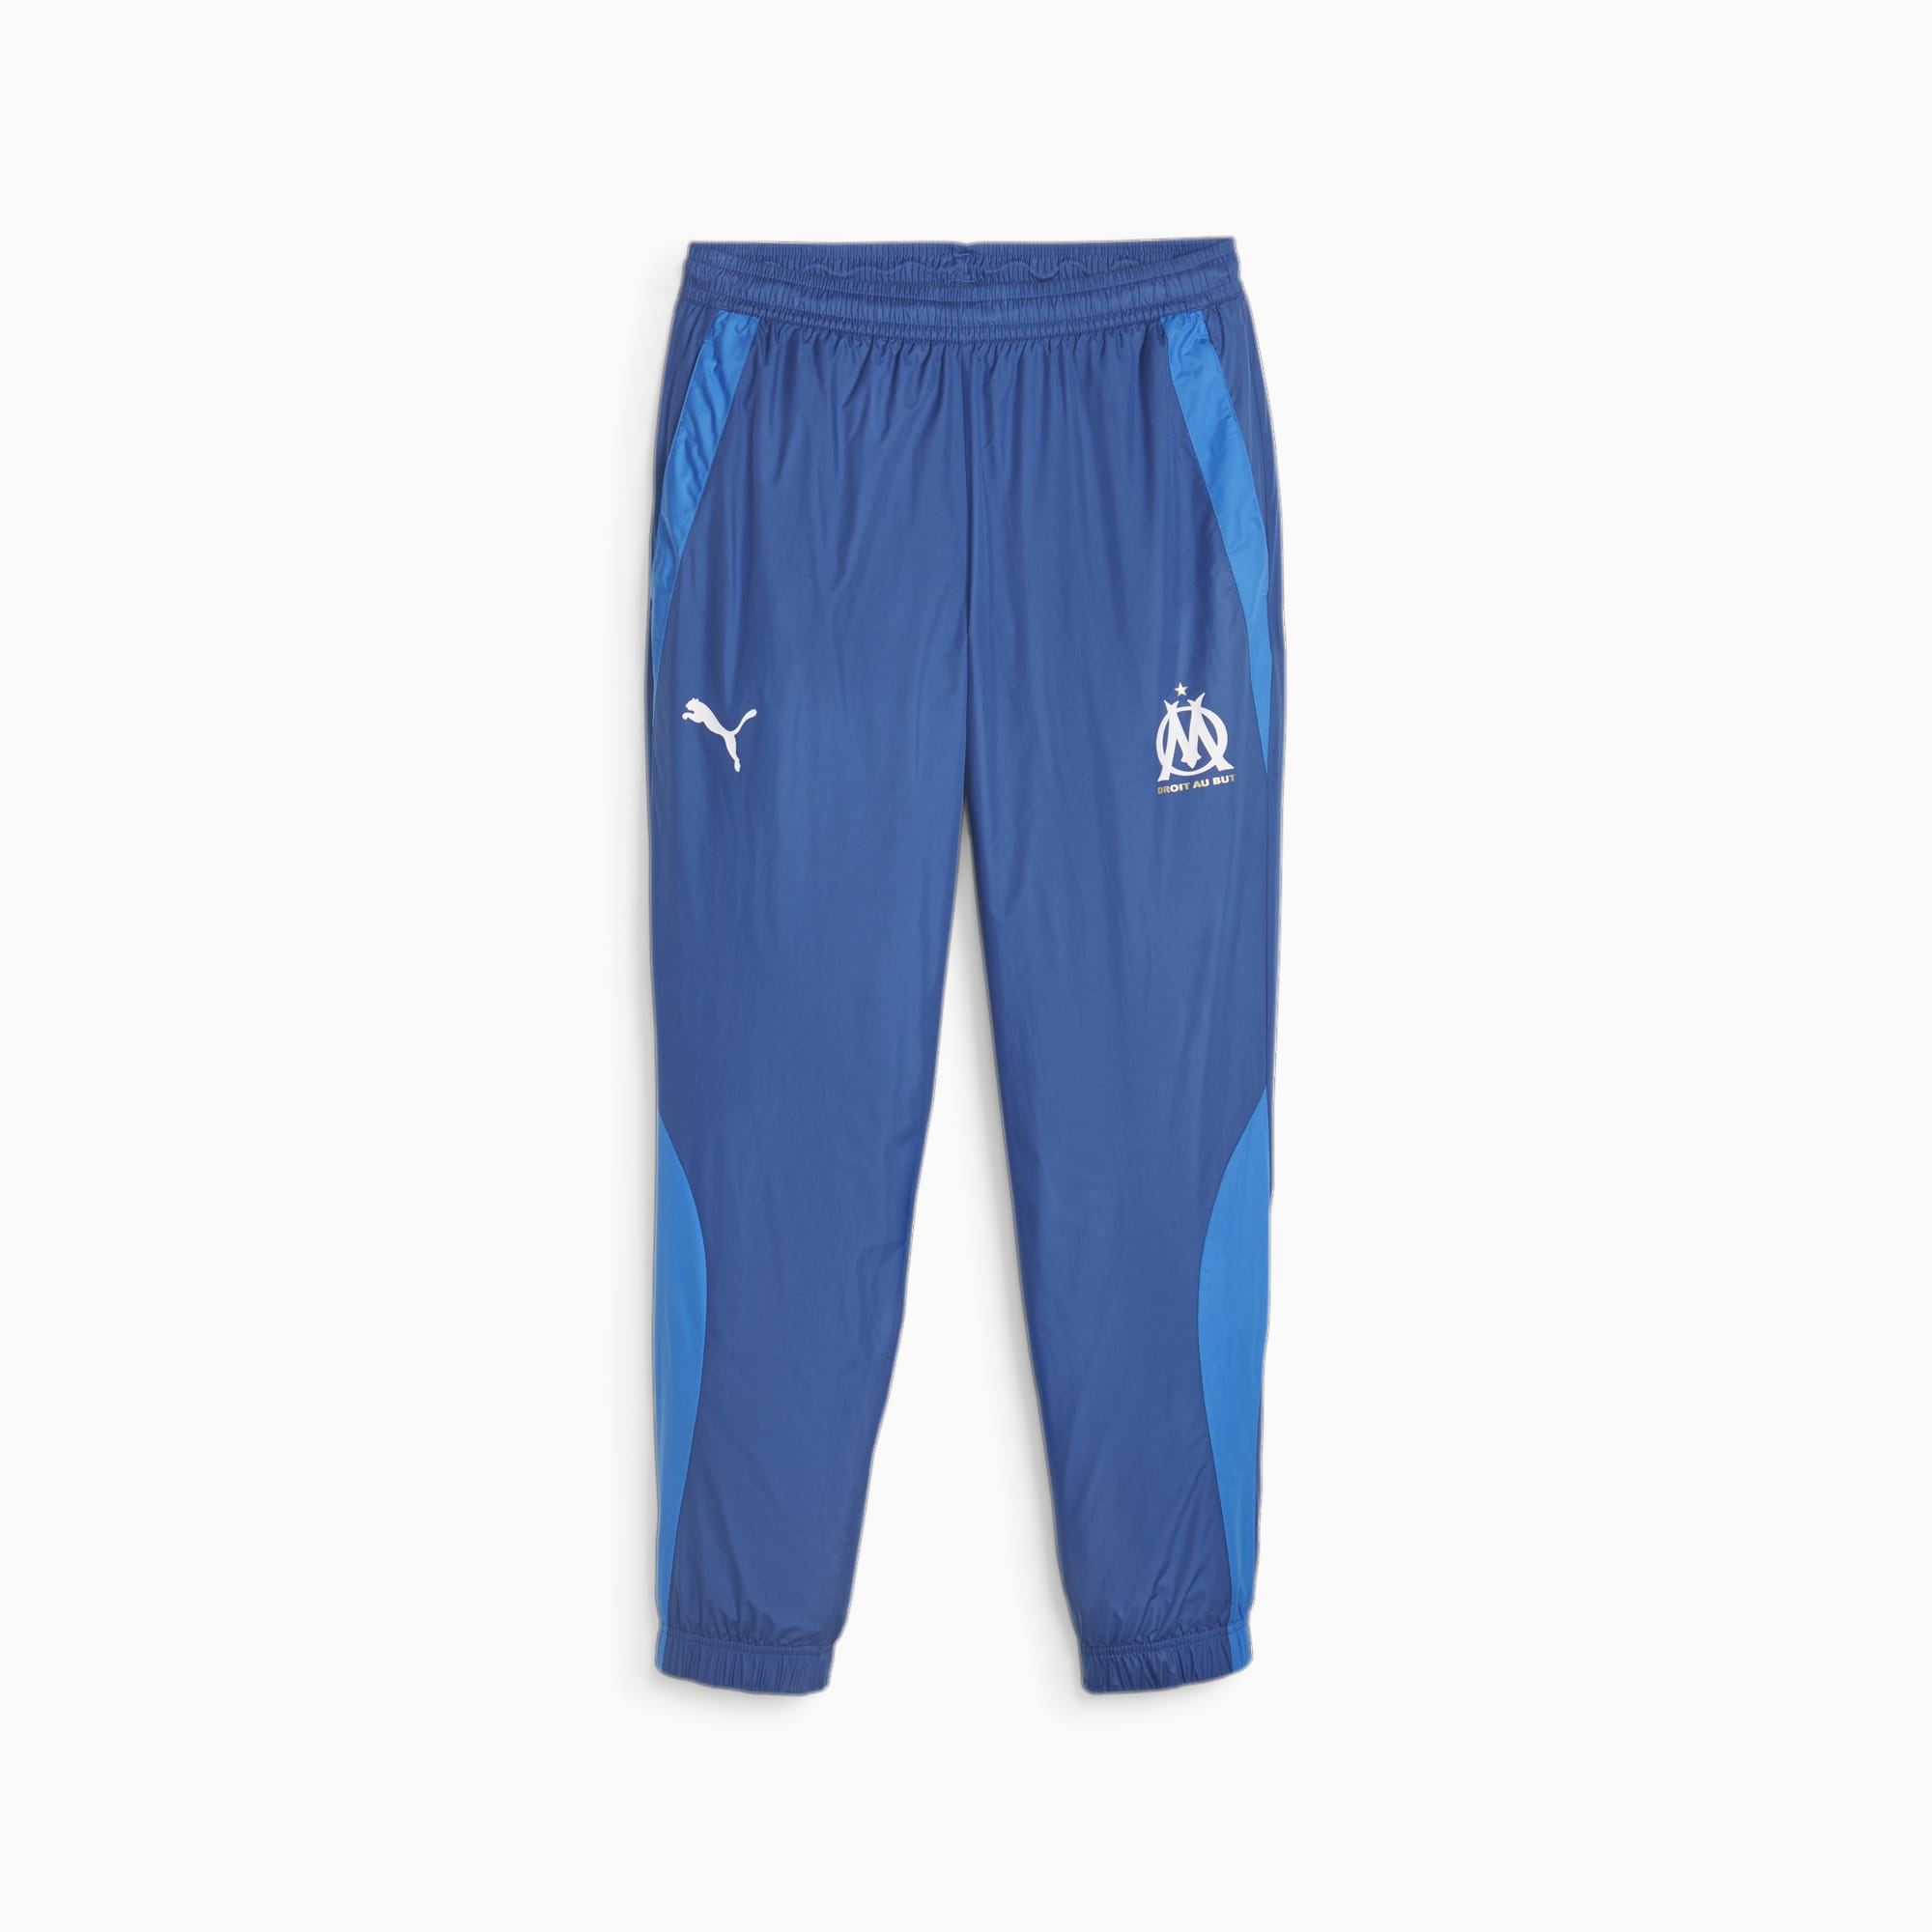 Men's PUMA Olympique De Marseille Prematch Football Pants, Royal Blue, Size XXL, Clothing